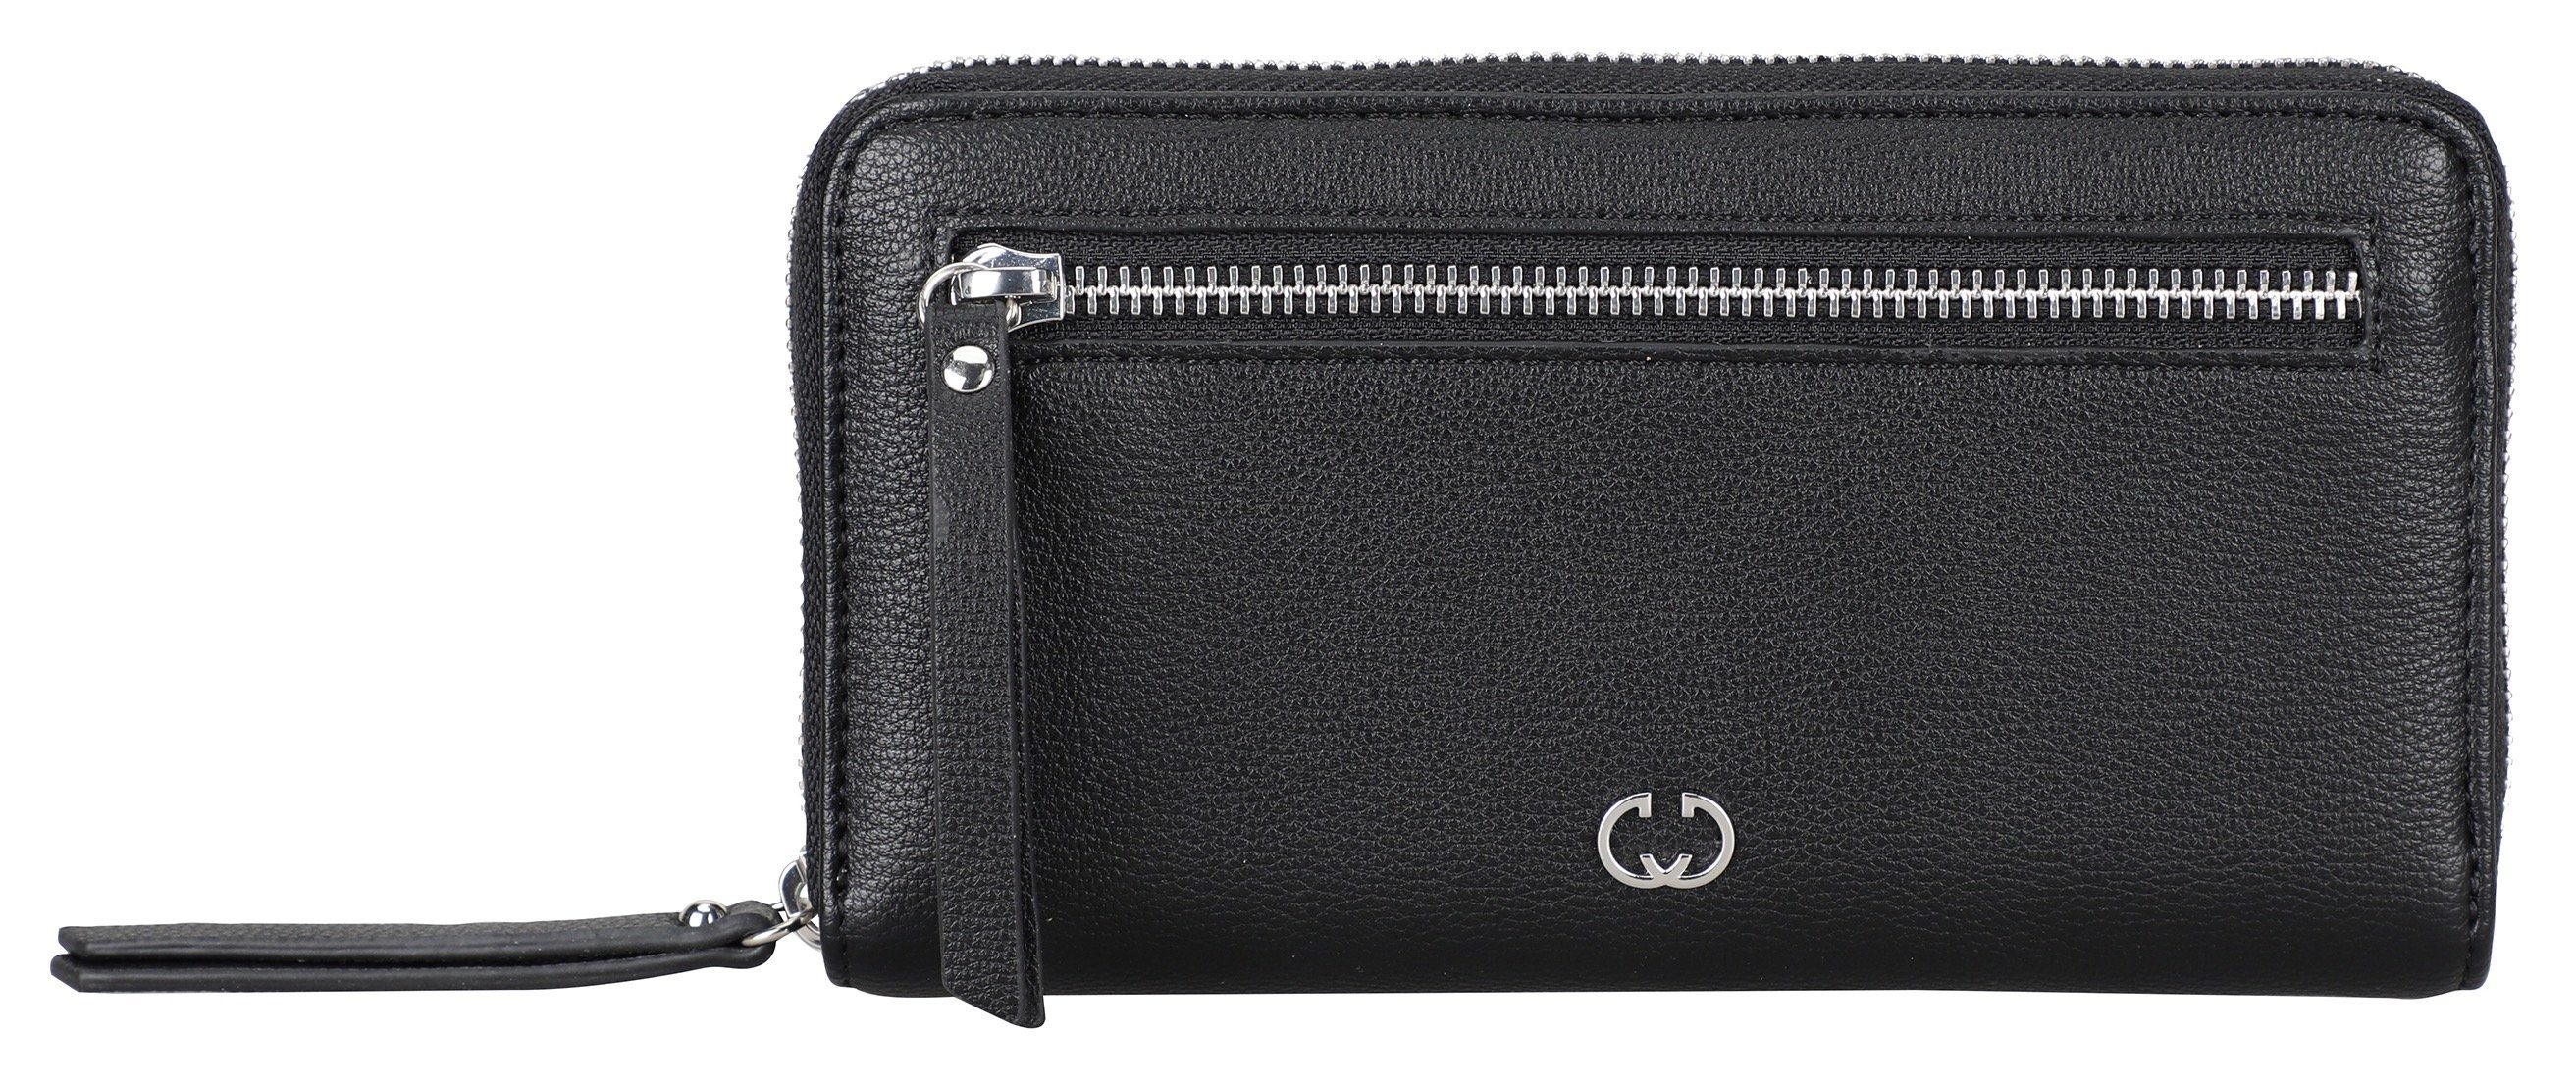 GERRY WEBER Bags Geldbörse daily use purse lh13z, mit viel Stauraum black